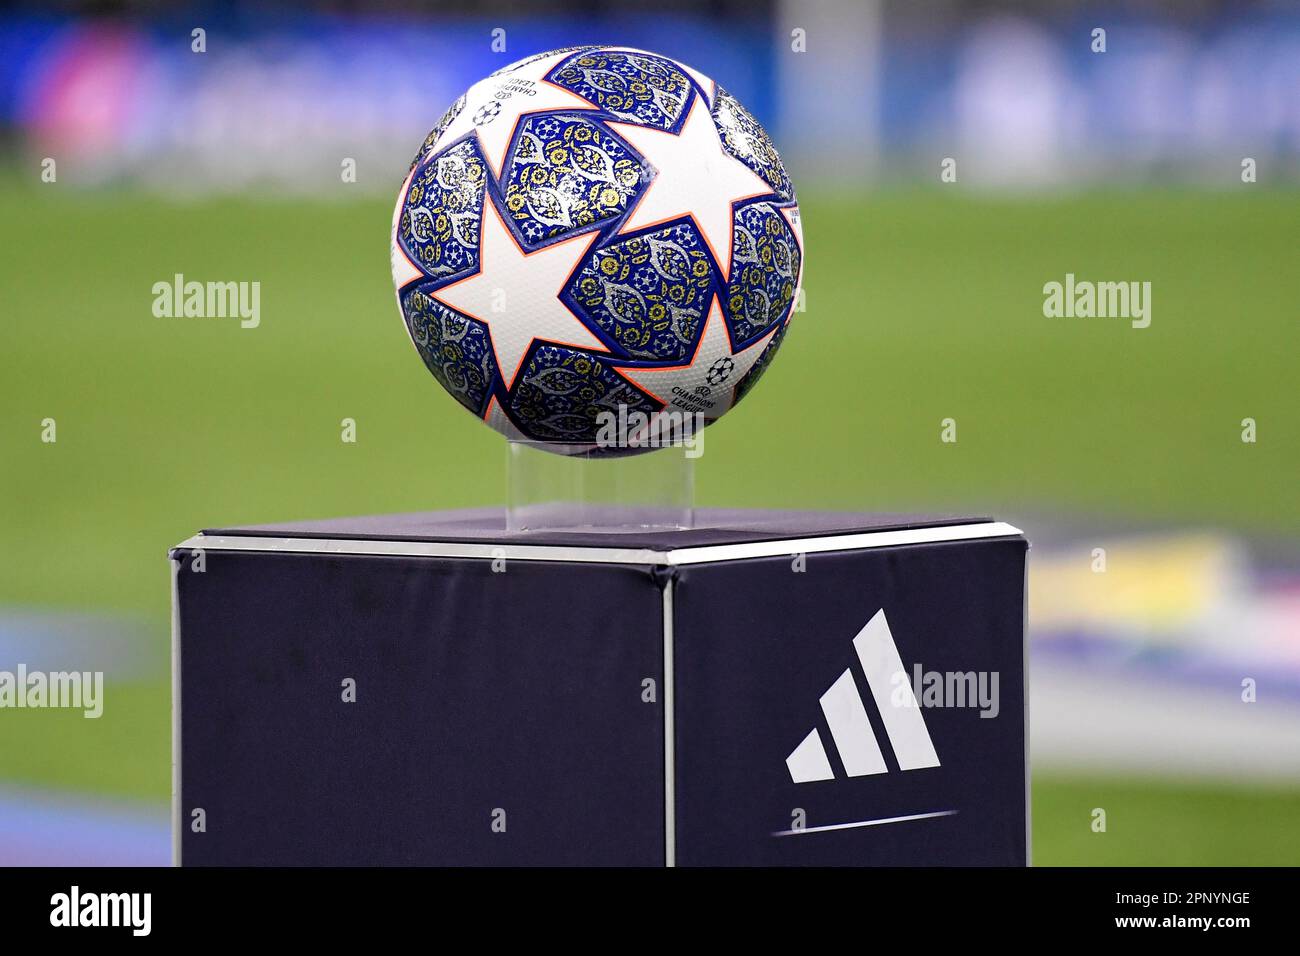 Der Adidas Champions League-Ball wird während des Champions League-Fußballspiels zwischen dem FC Internazionale an auf einem Sockel mit dem Firmenlogo platziert Stockfoto